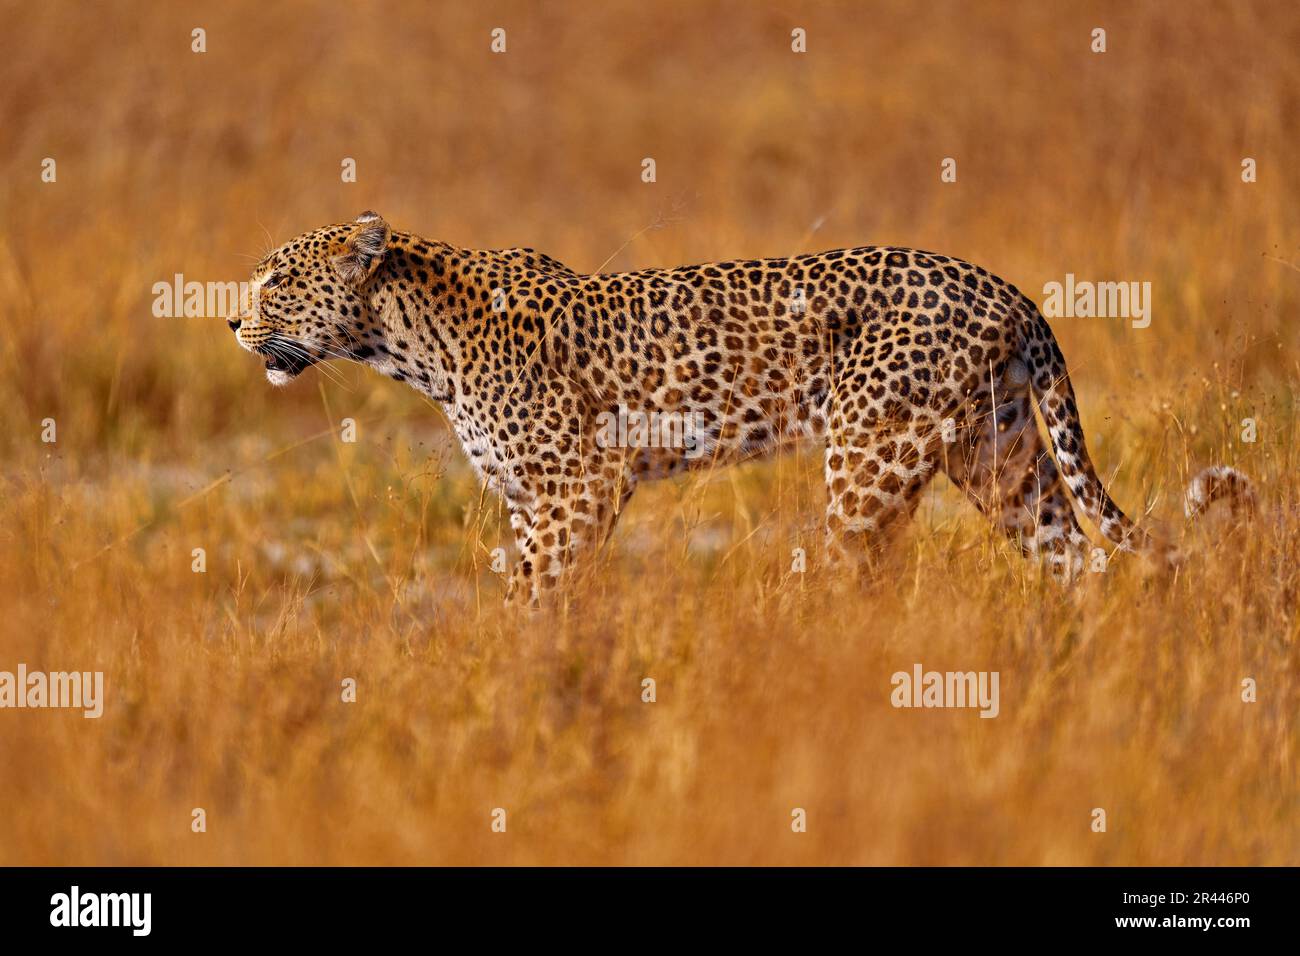 Afrikanische Wildtiere. Leopard, Panthera pardus Shortidgei, Naturlebensraum, große Wildkatze im Naturlebensraum, sonniger Tag in der Savanne, Okavango Delta Bo Stockfoto